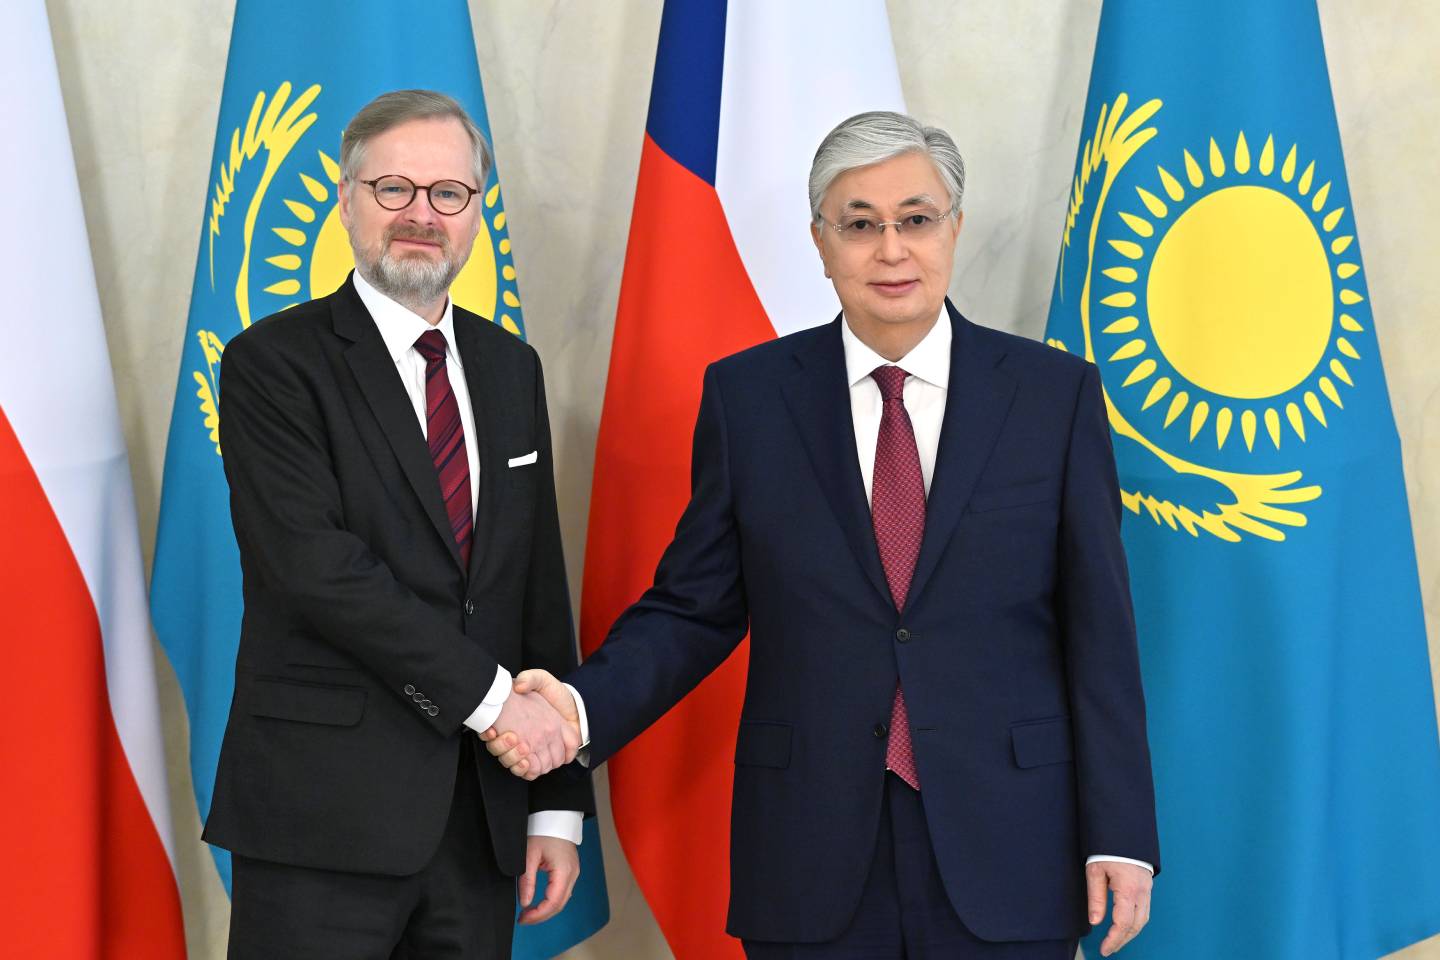 Новости мира / Политика в мире / Президент Казахстана встретился с премьер-министром Чехии